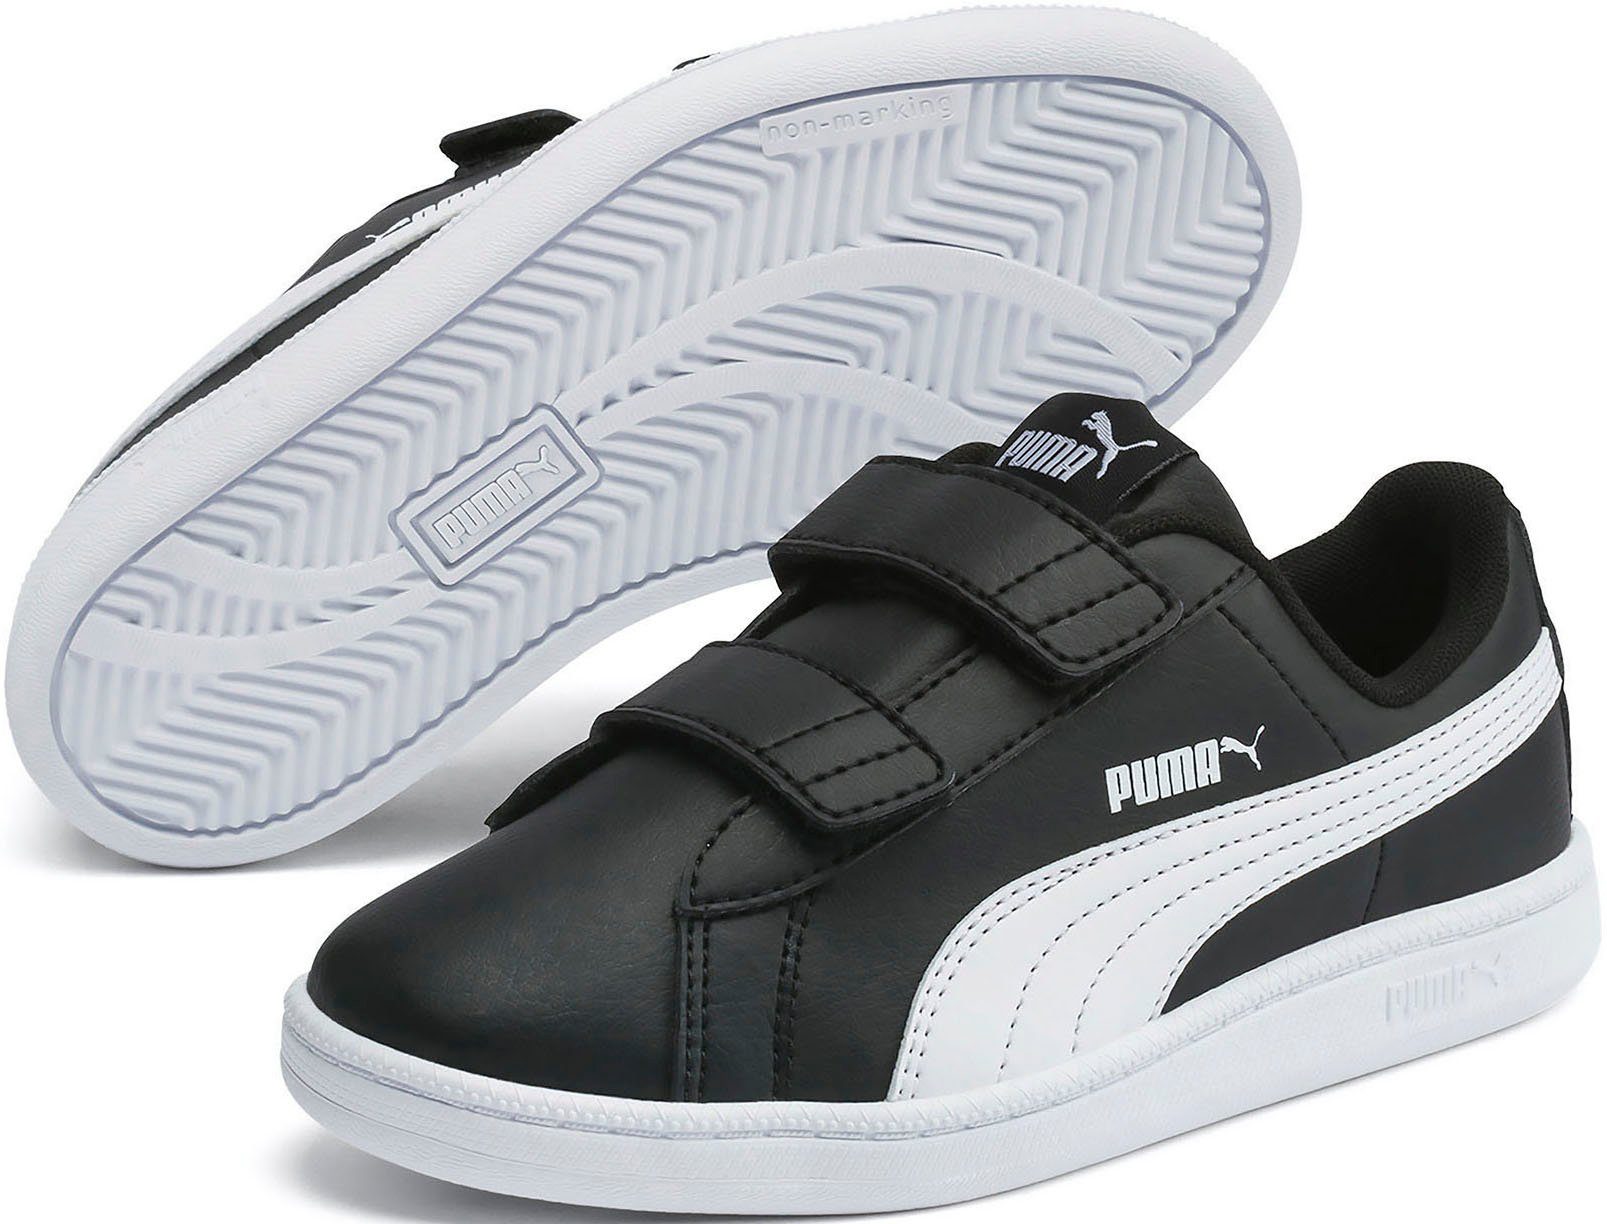 PUMA mit UP V PUMA Sneaker schwarz-weiß PS Klettverschluss